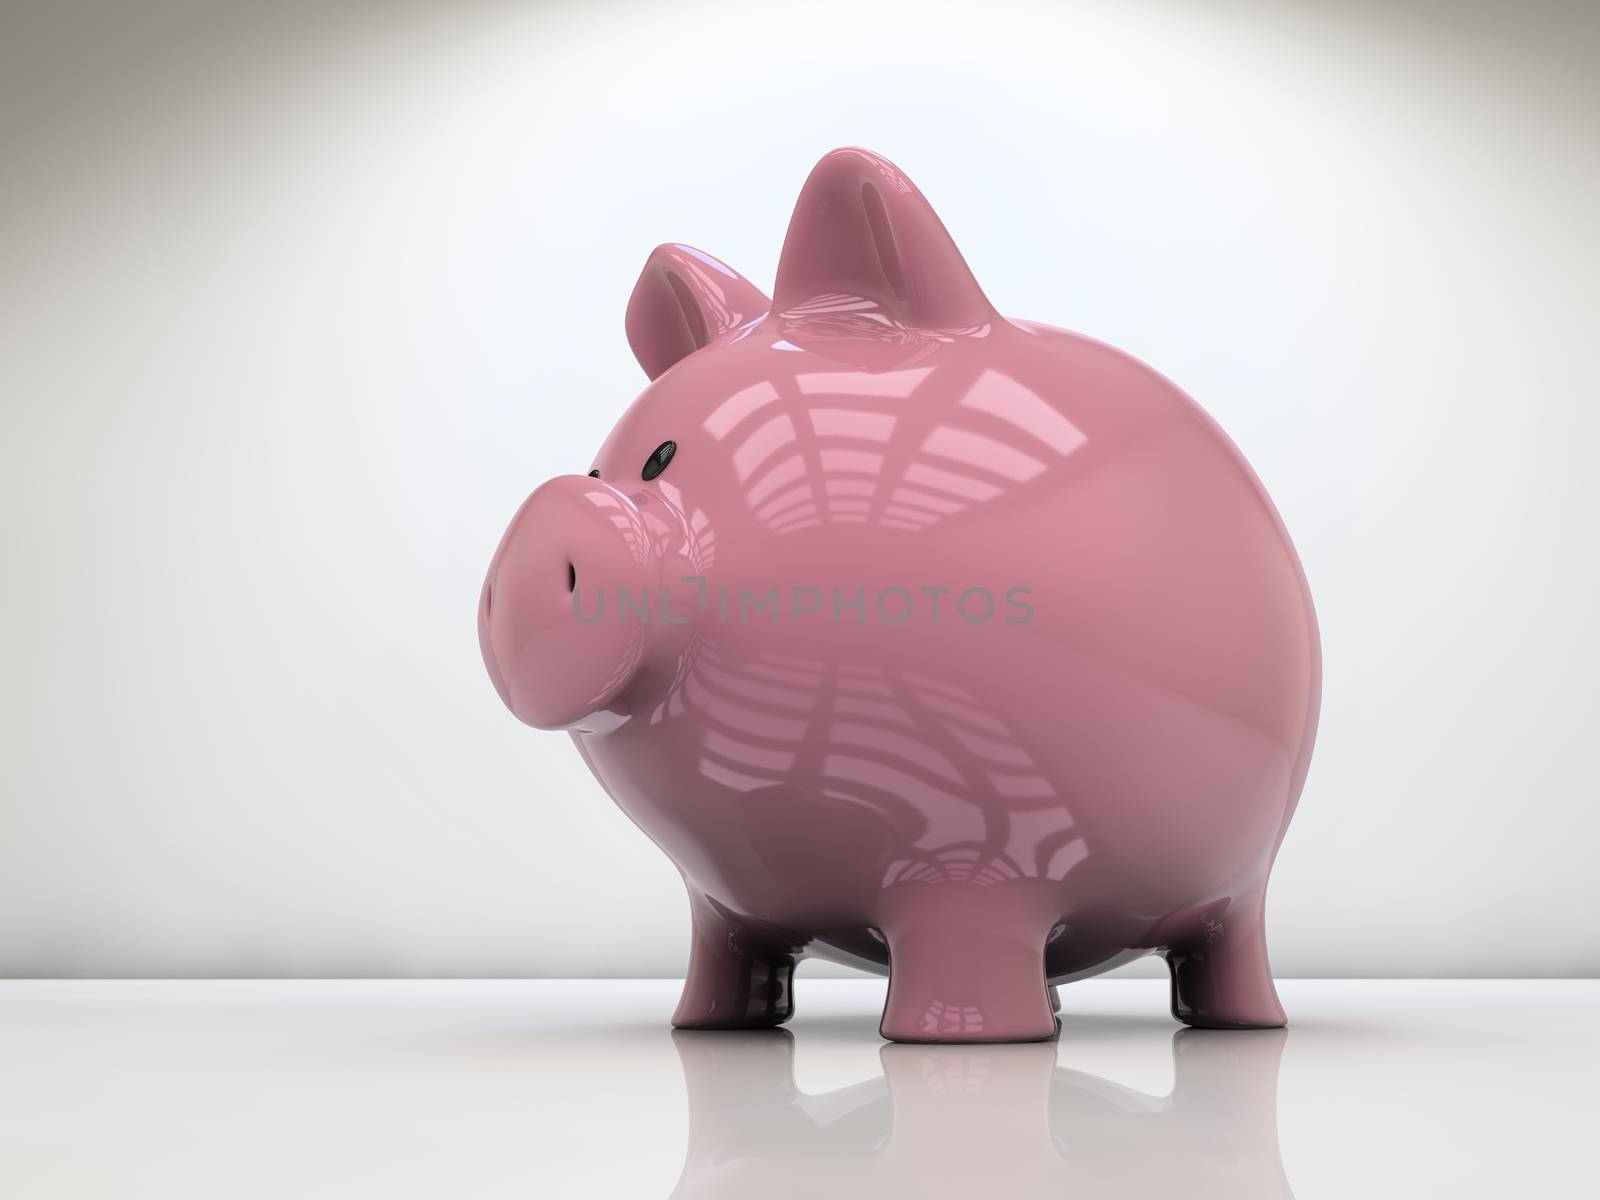 Piggy bank on white by dynamicfoto